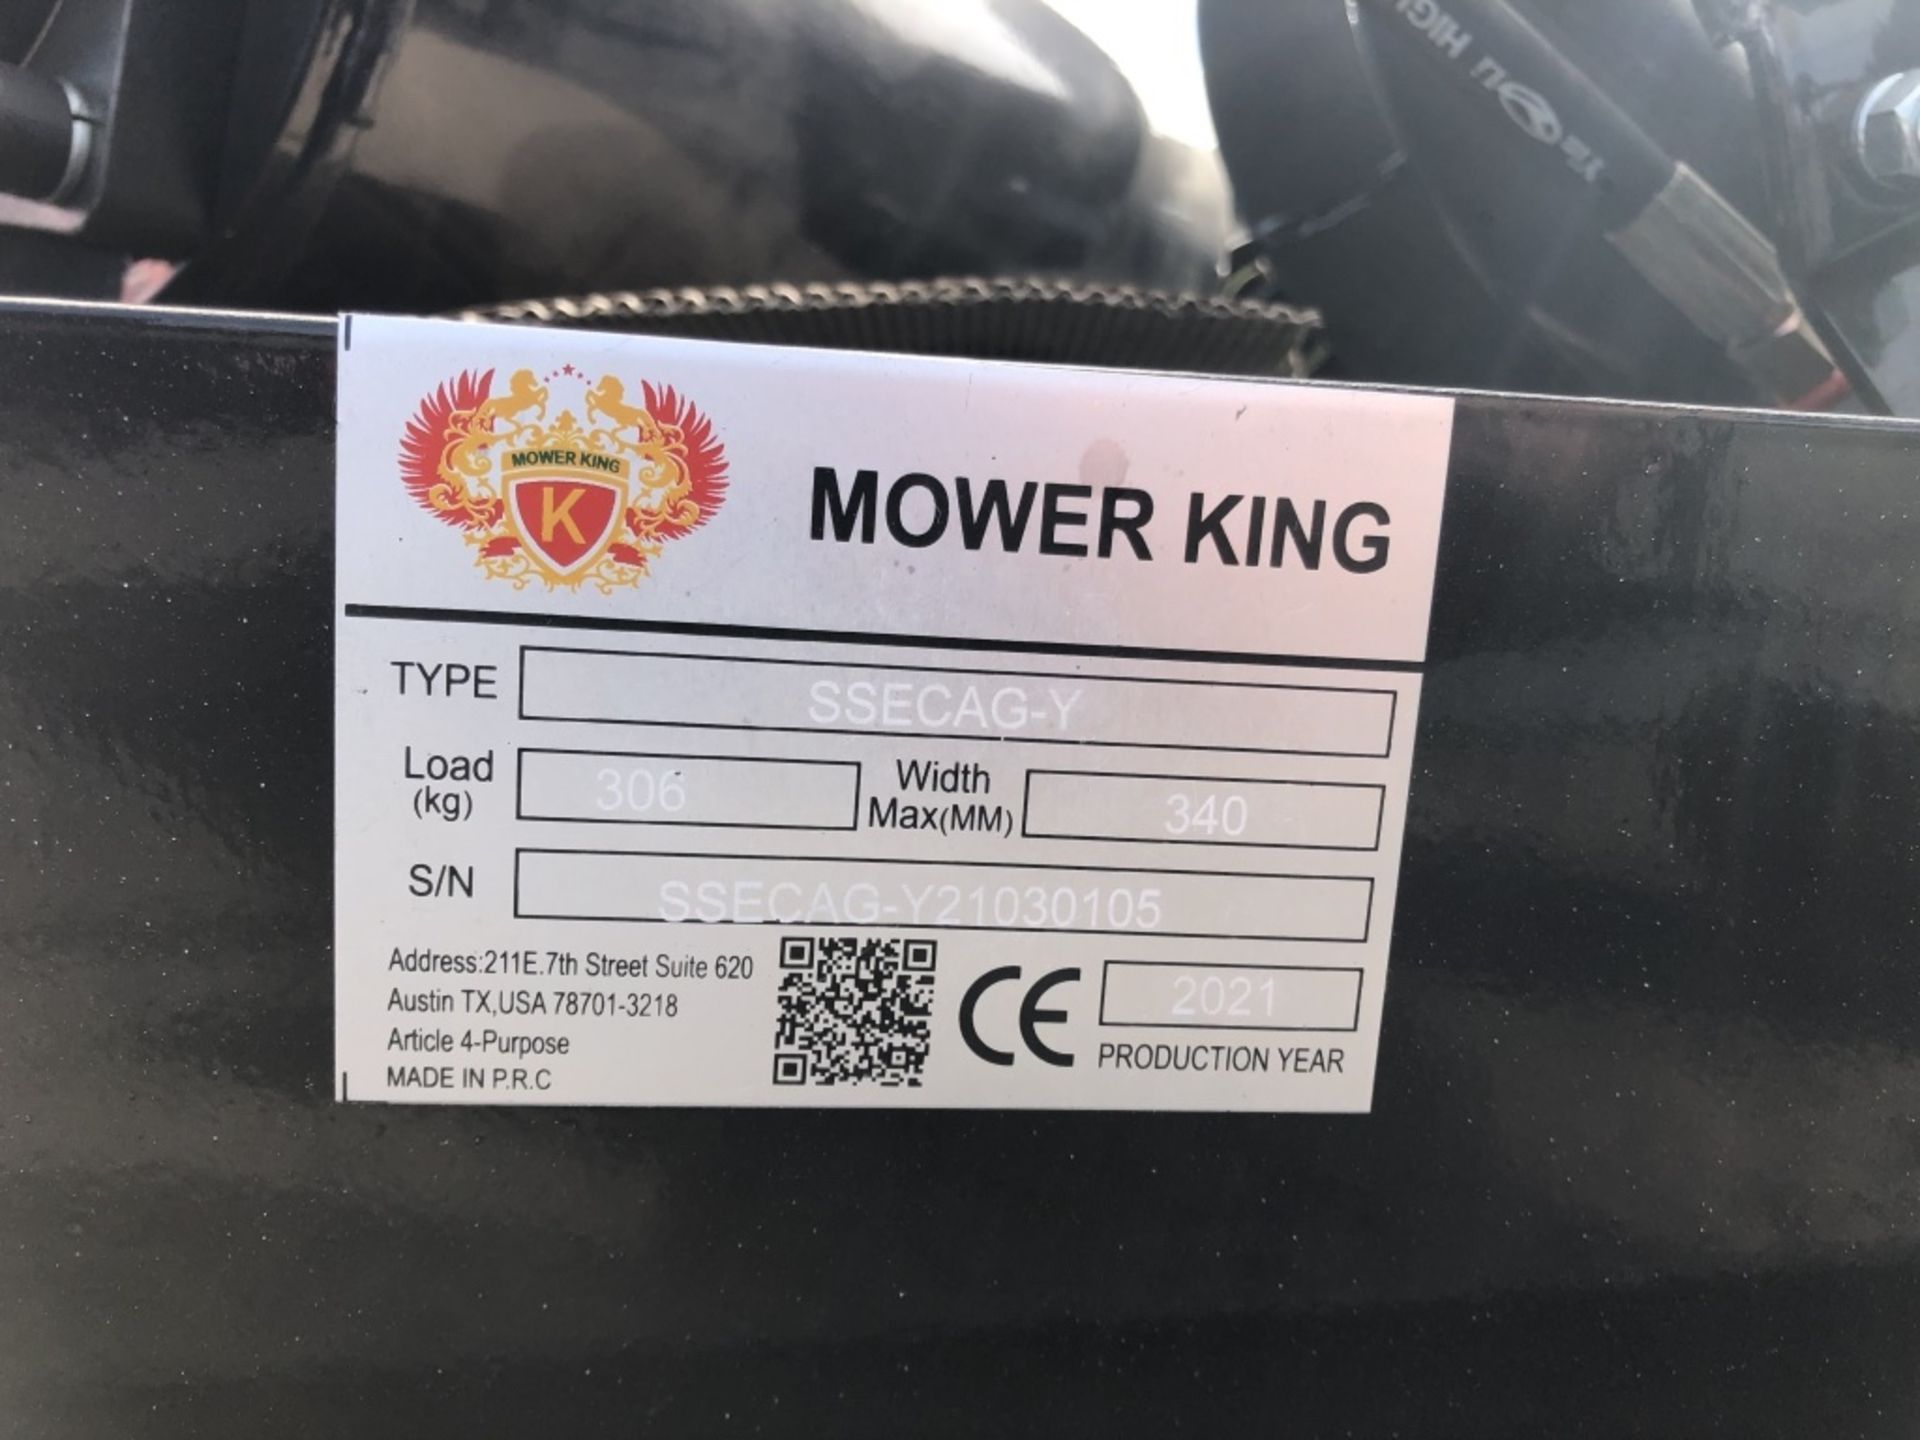 2021 Mower King SSECAG-Y Auger - Image 2 of 2